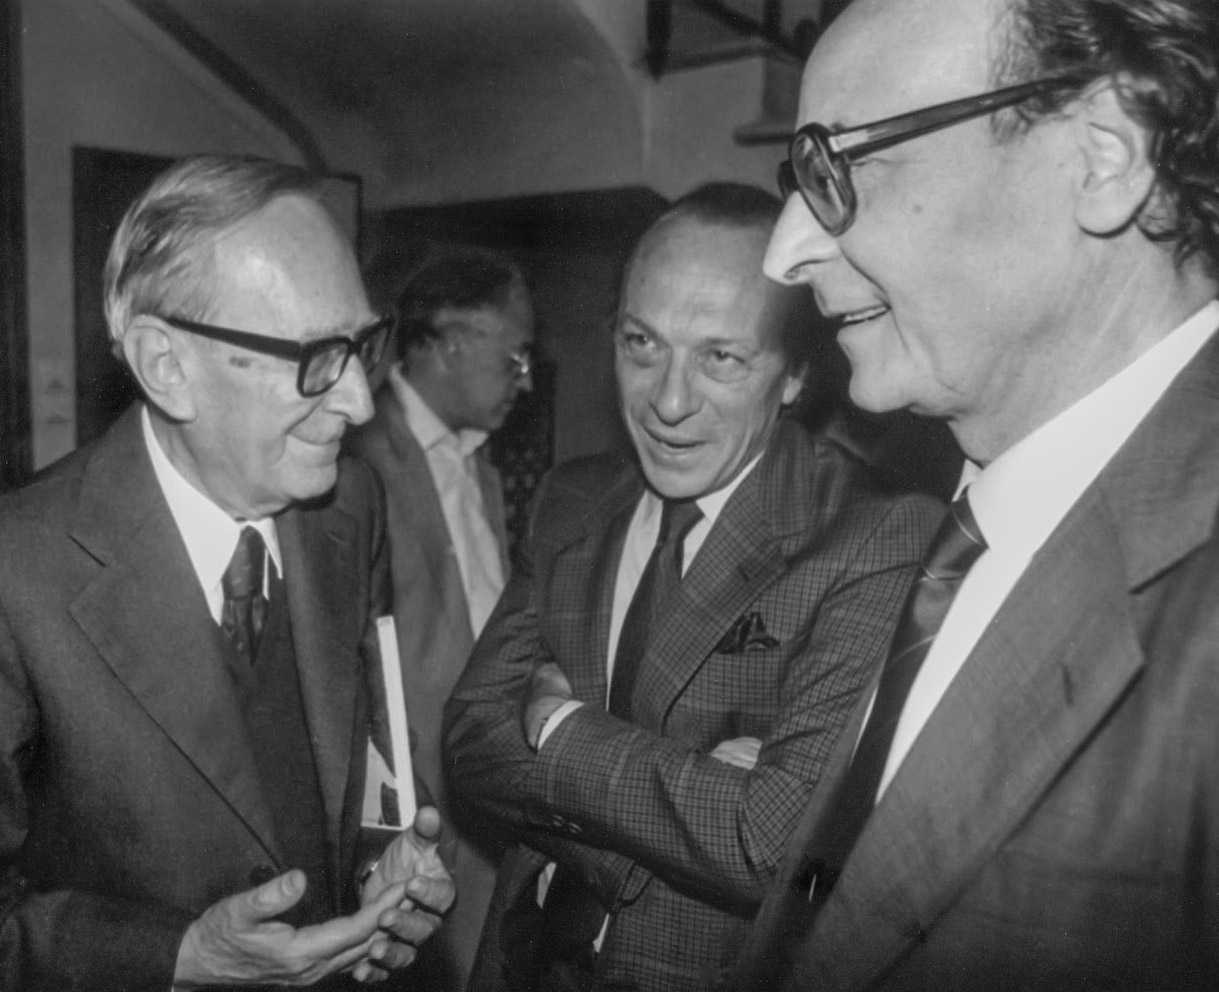 (da sinistra: Eugenio Garin, Manfredi Nicoletti, Tullio Gregory)